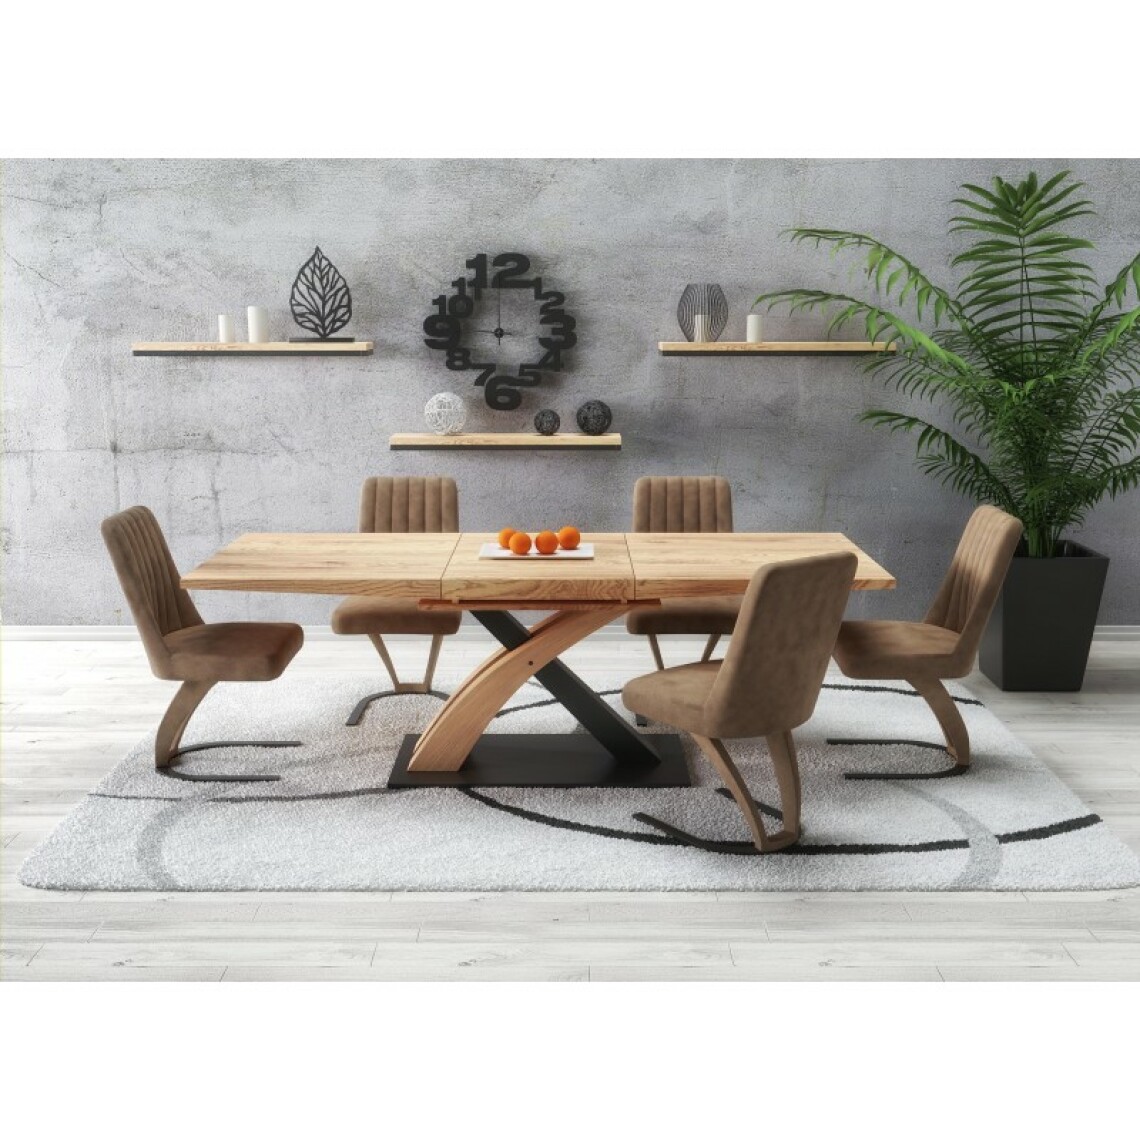 Carellia - Table à manger design extensible 160-220 cm x 90 cm x 77 cm - Chêne doré/Noir - Tables à manger